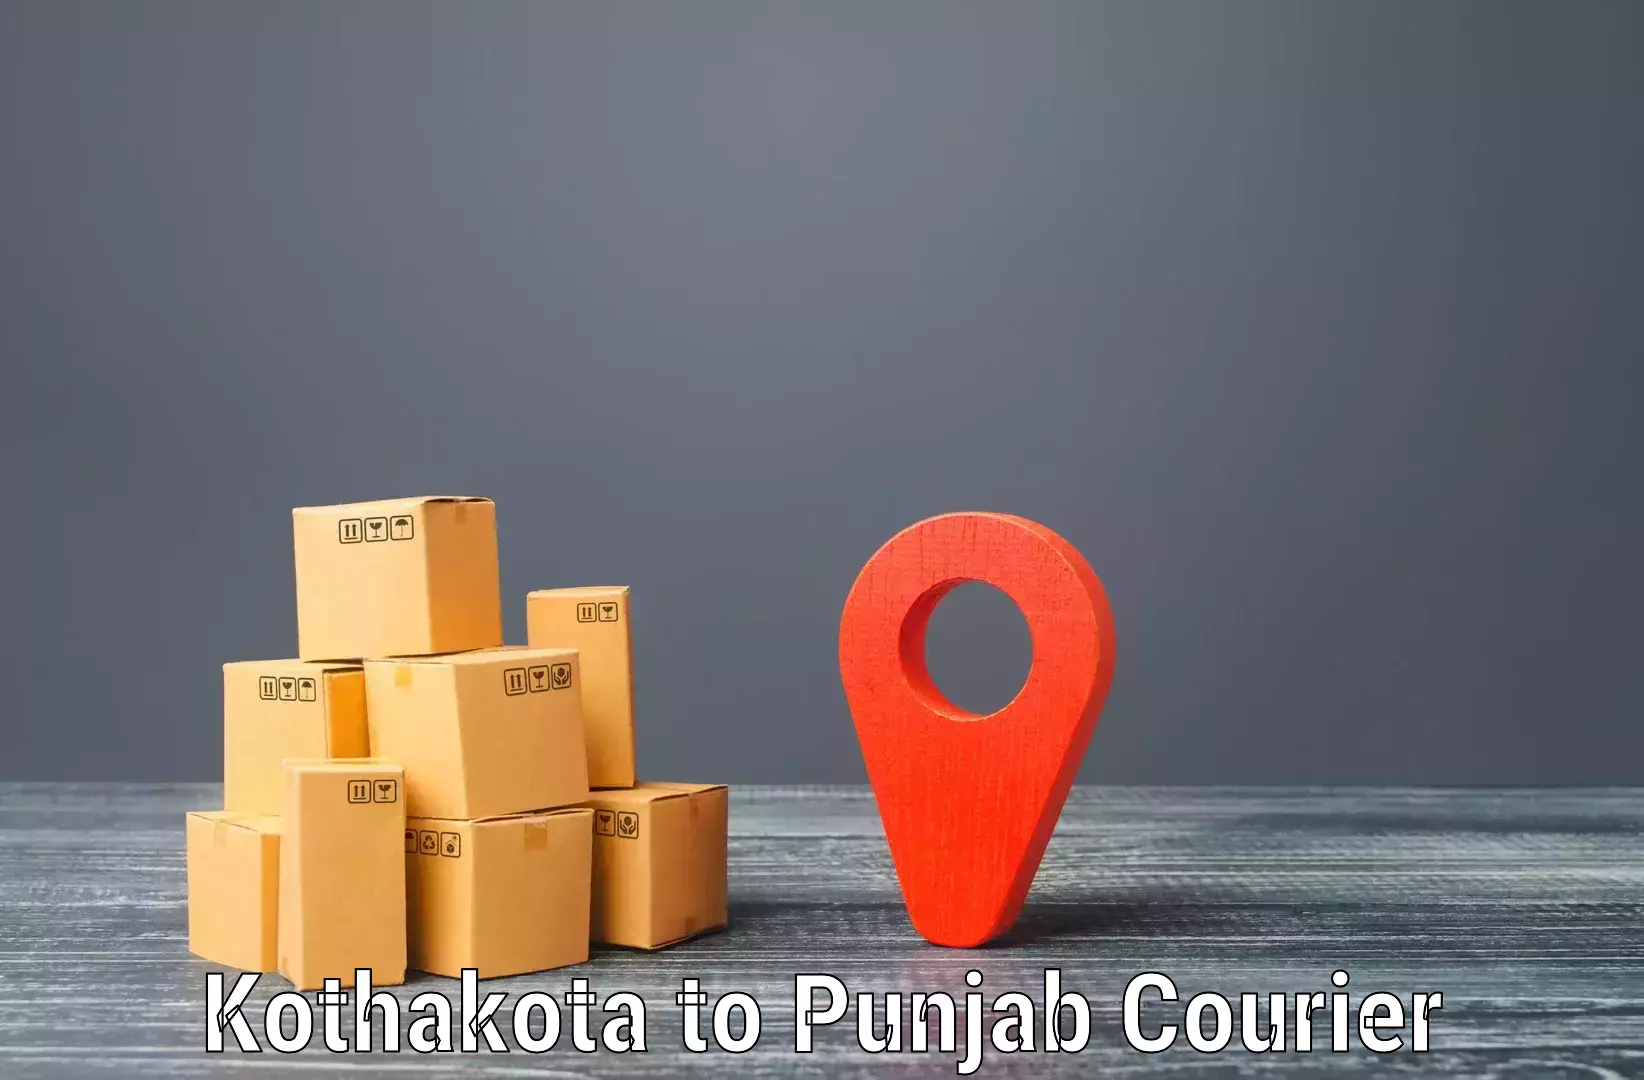 Door to door delivery in Kothakota to Punjab